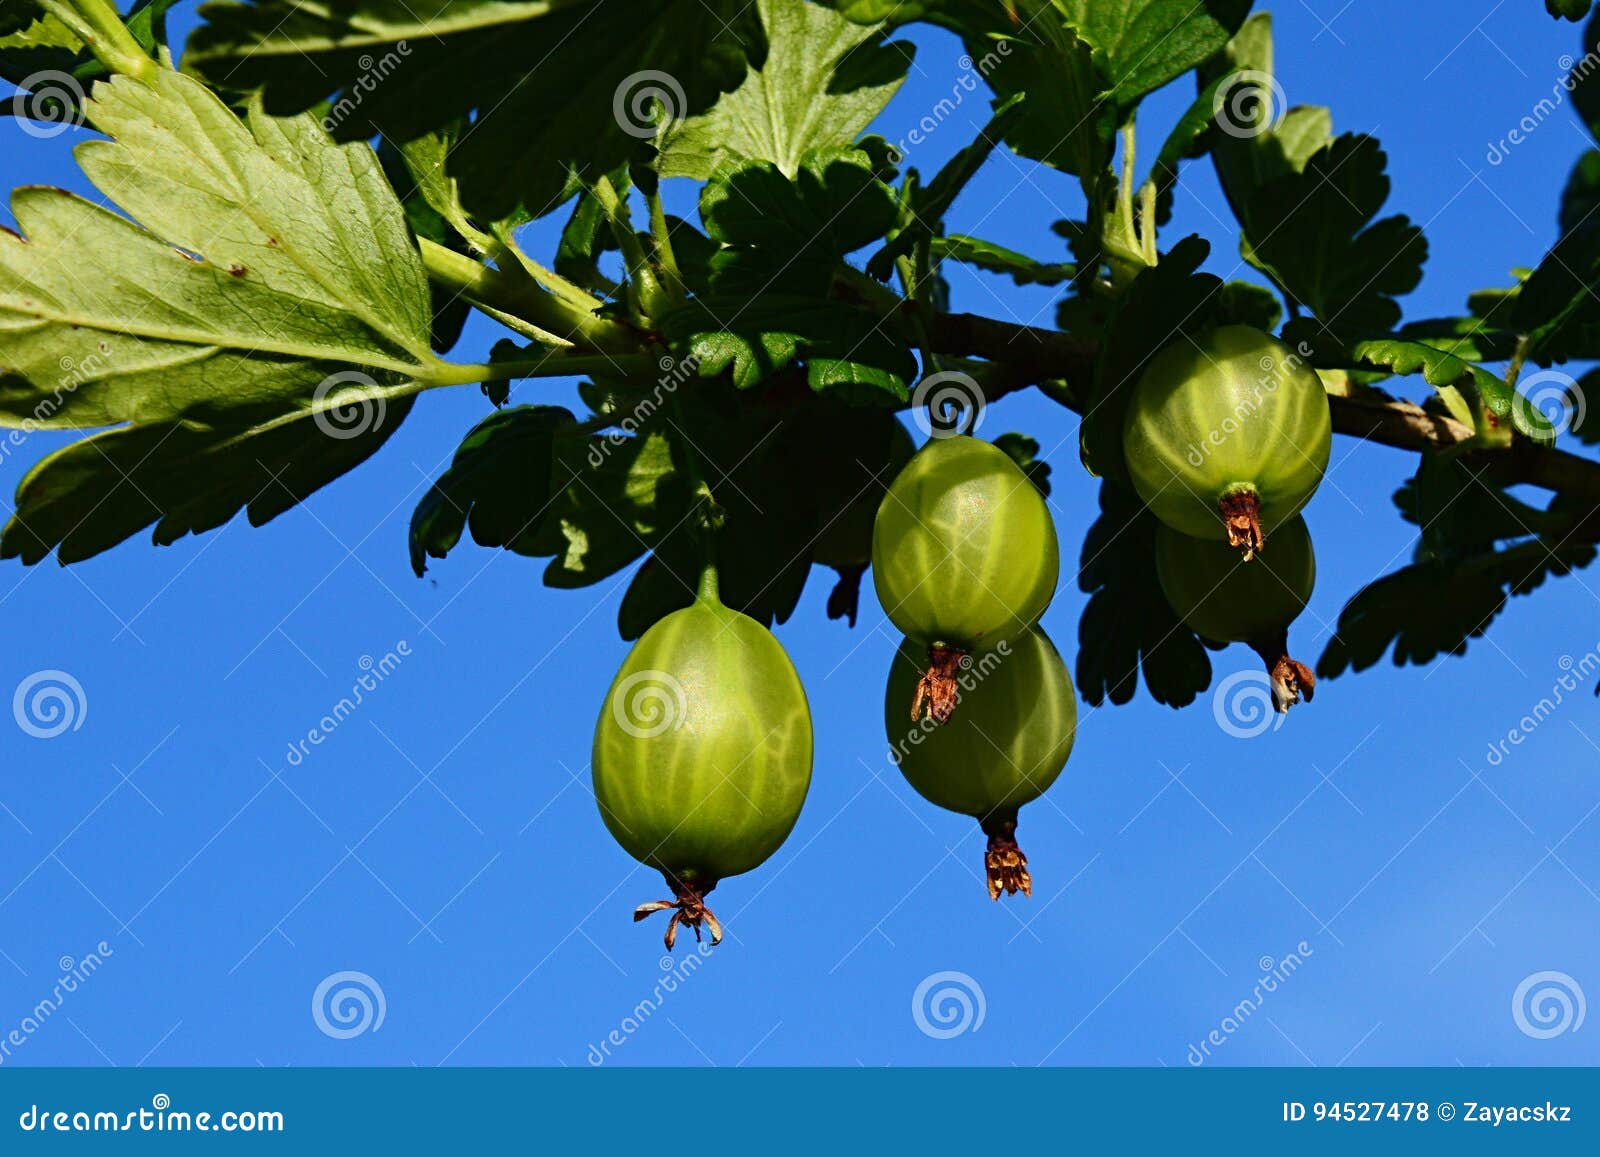 Green Gooseberries on Gooseberry Ribes Uva-Crispa Bush Against Blue Sky ...